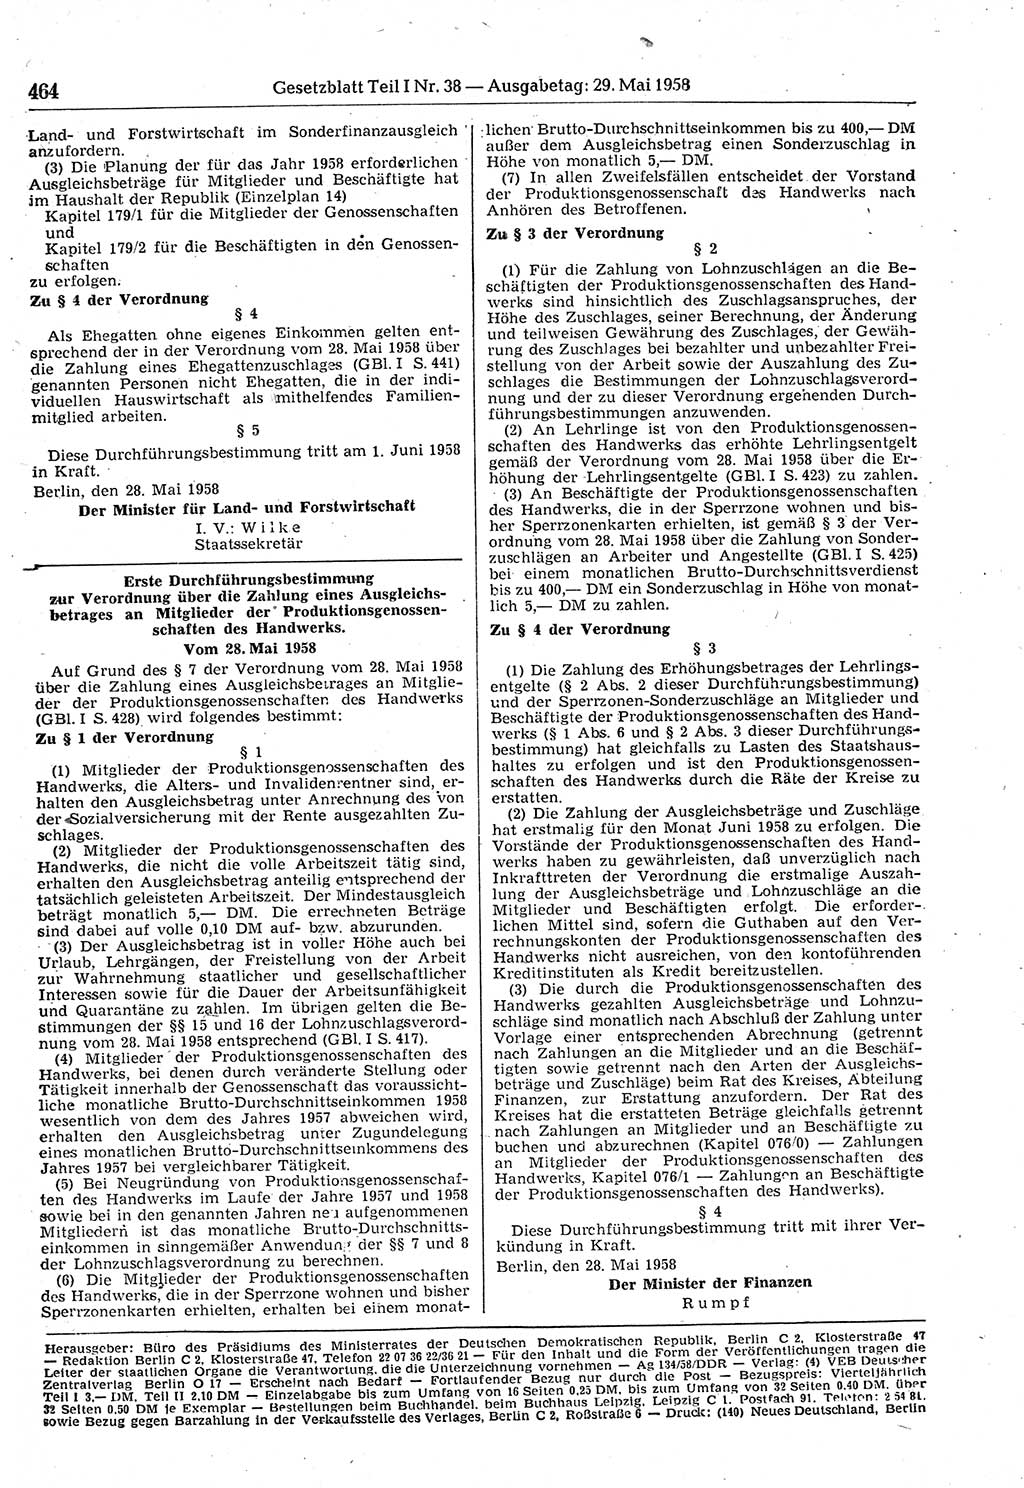 Gesetzblatt (GBl.) der Deutschen Demokratischen Republik (DDR) Teil Ⅰ 1958, Seite 464 (GBl. DDR Ⅰ 1958, S. 464)